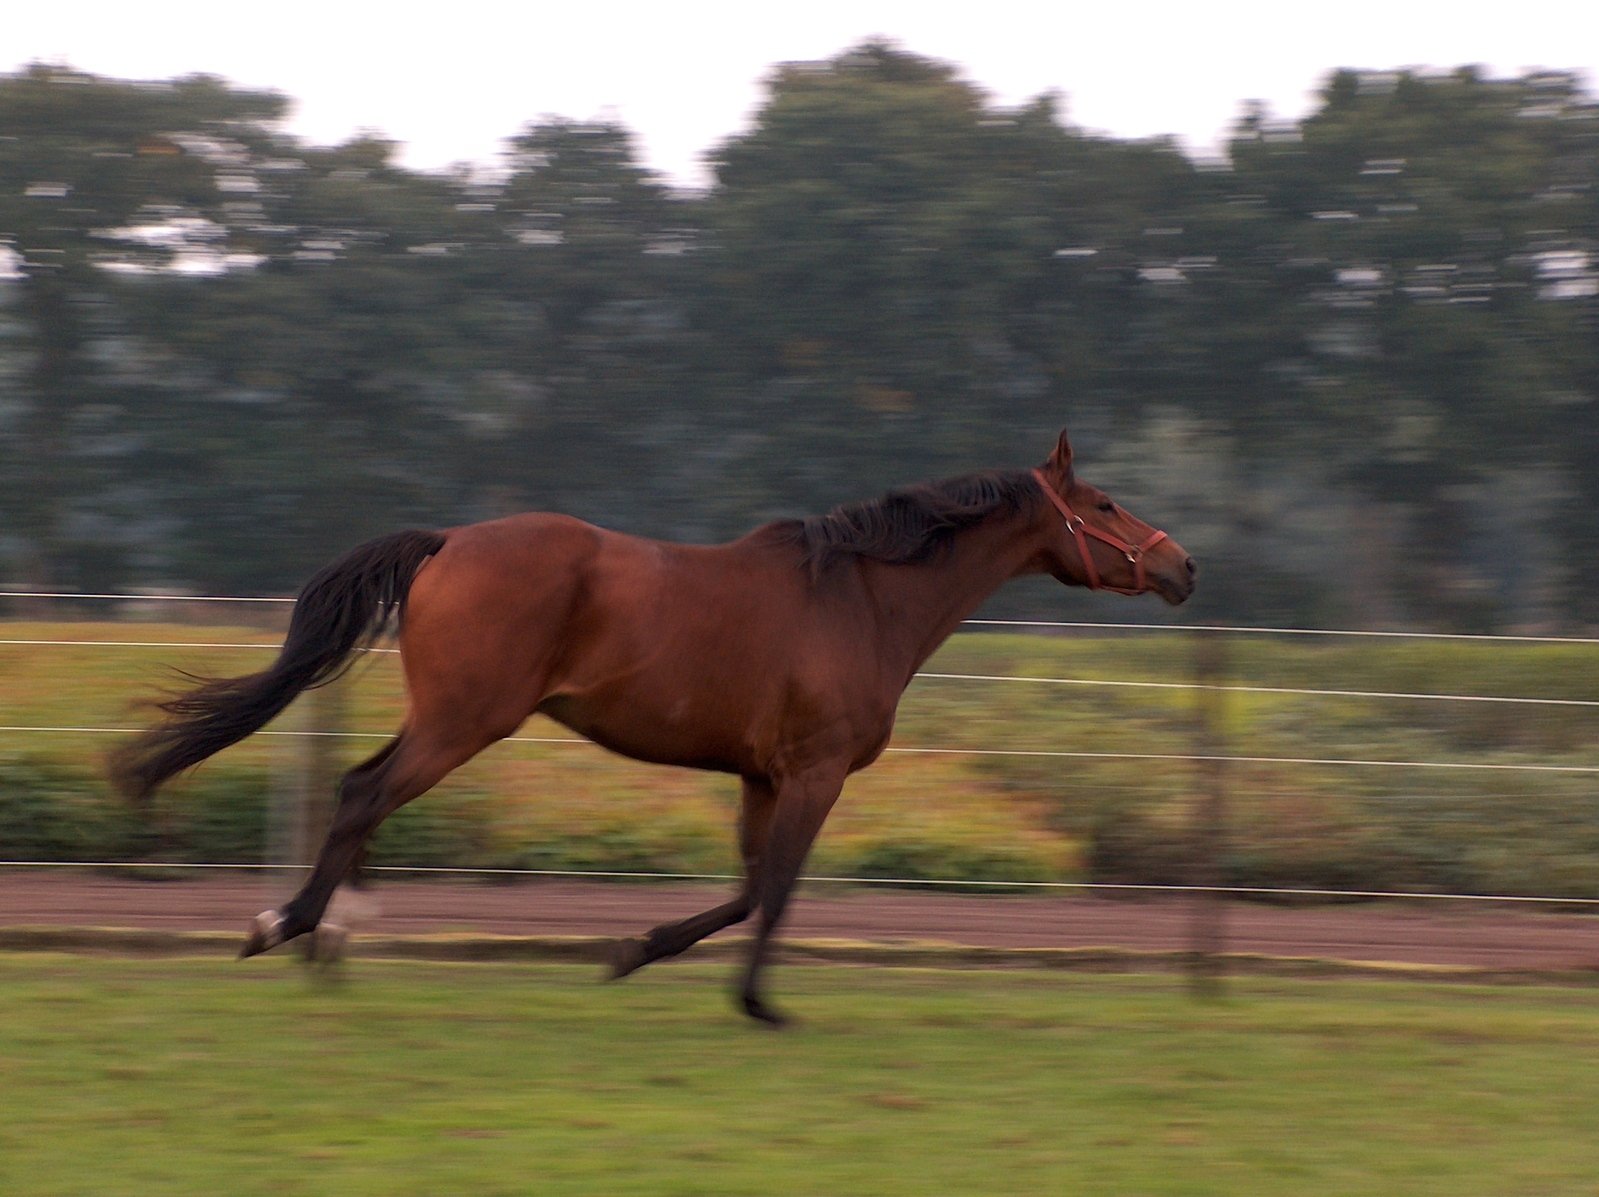 a brown horse runs along a grassy path